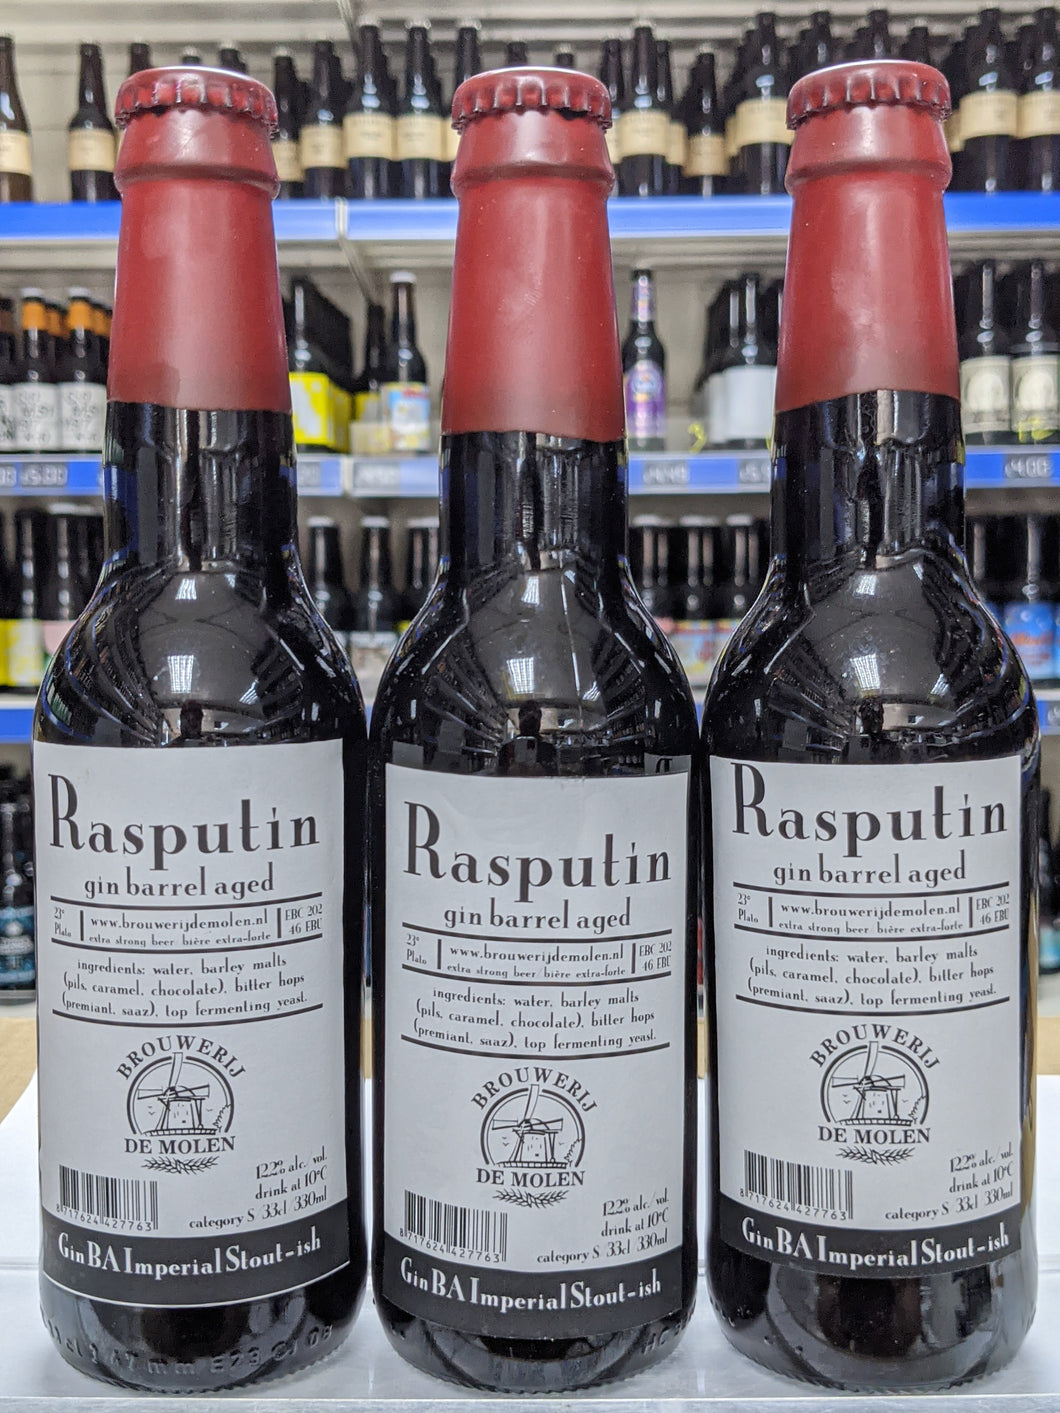 Rasputin Gin Barrel Aged - Brouwerij De Molen - Gin Barrel Aged Russian Imperial Stout, 12.2%, 330ml Bottle